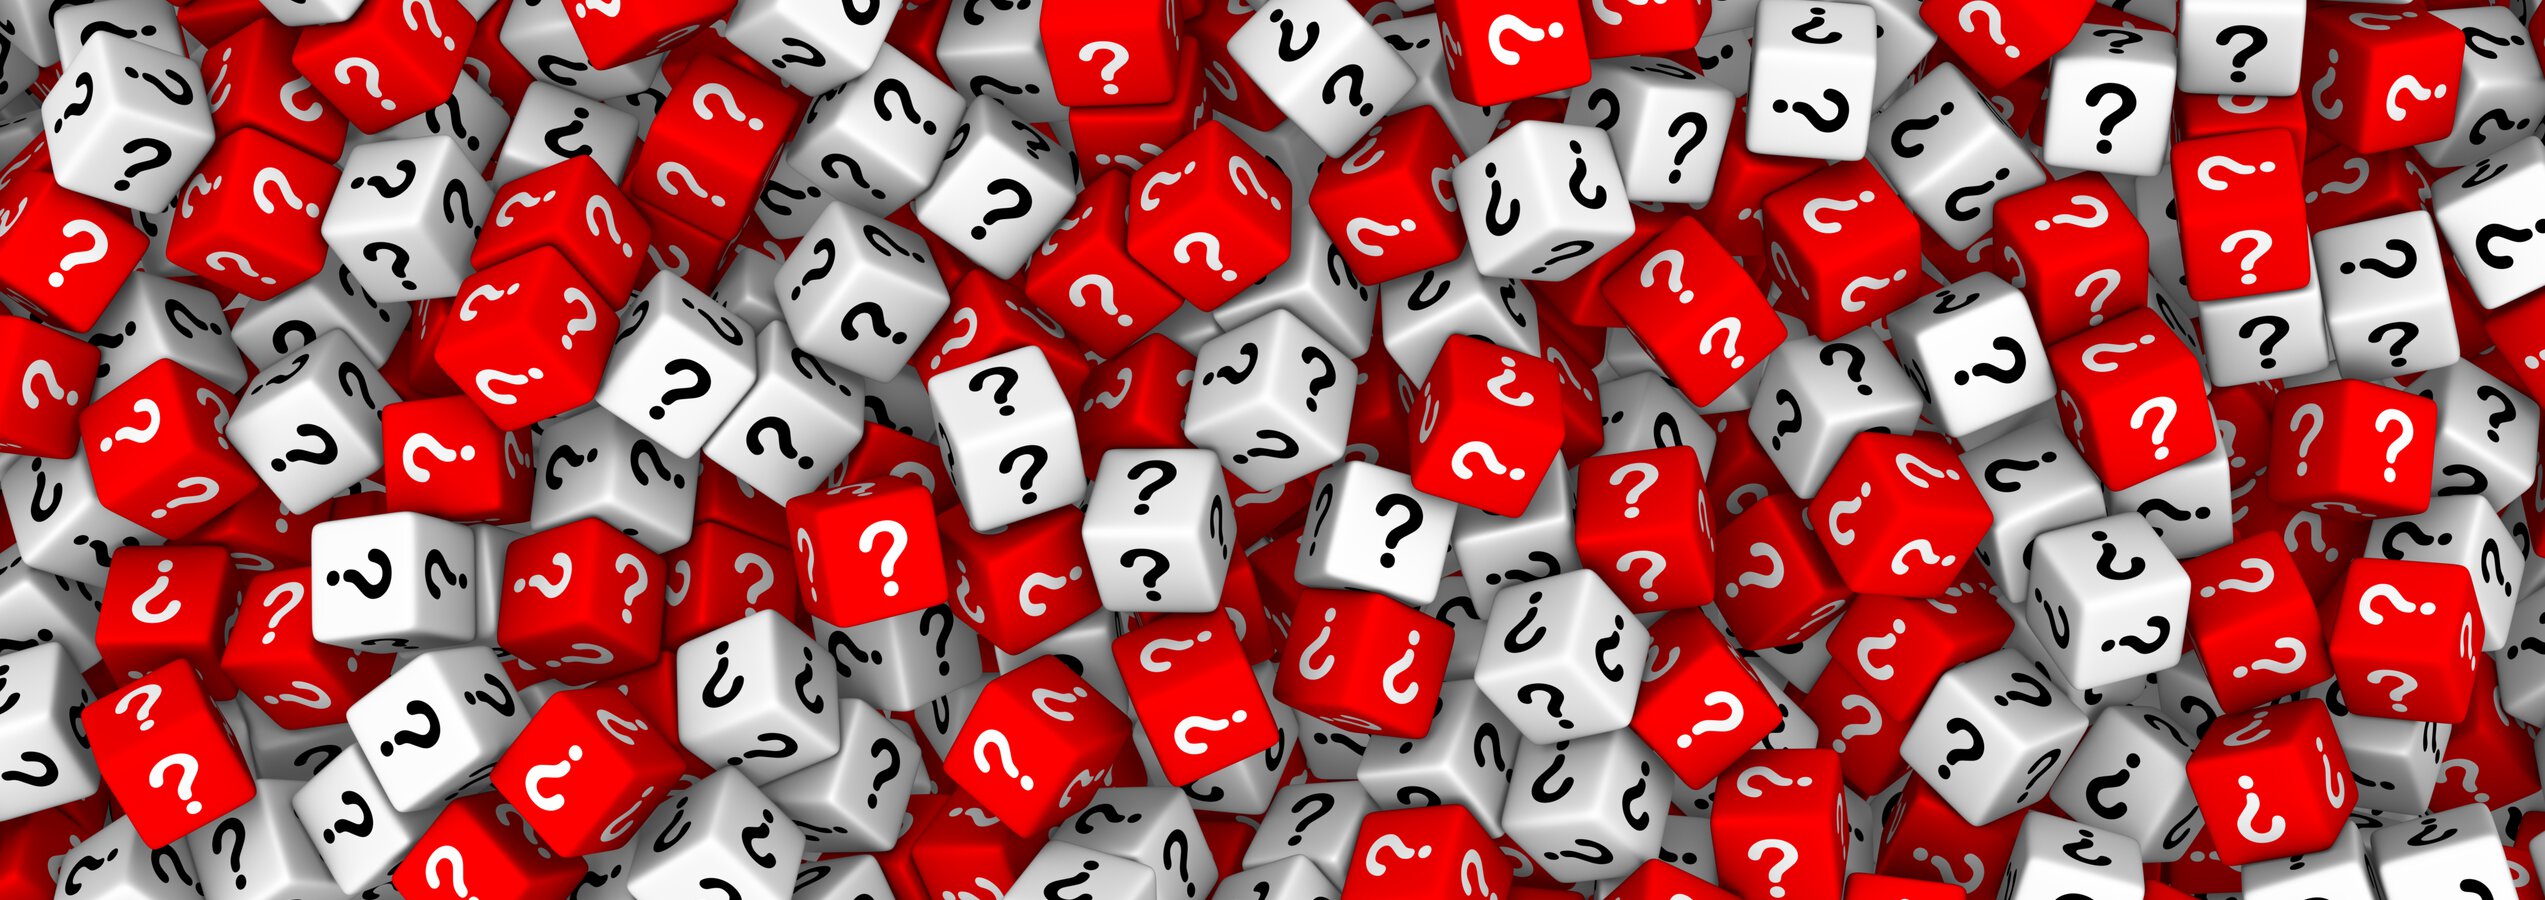 Rote und weiße Würfel mit Fragezeichen | © almagami/Getty Images iStockphoto